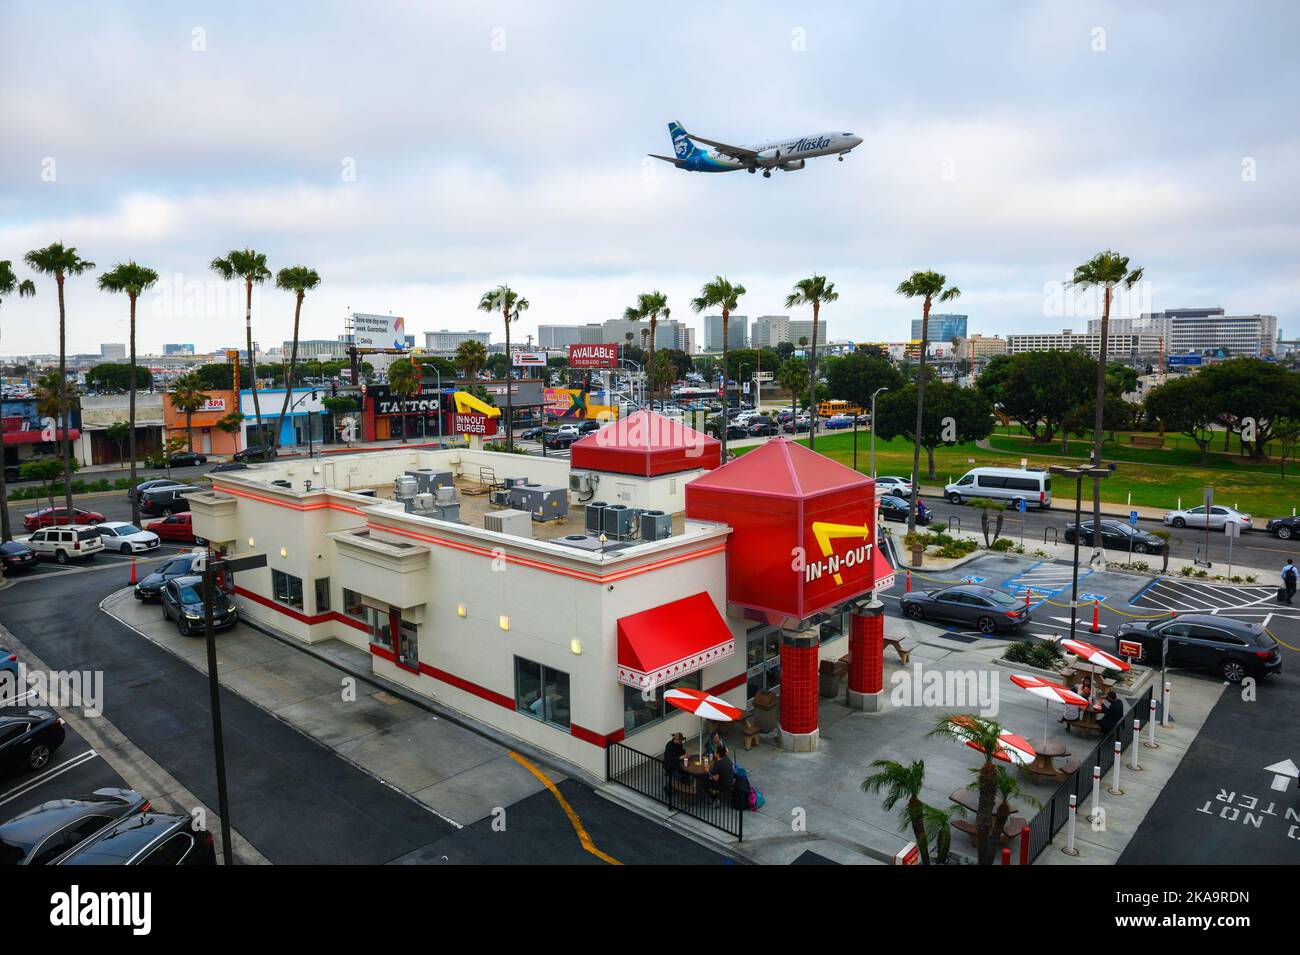 L'aereo Alaska Airlines sorvola il ristorante in-N-out Burger mentre atterra all'aeroporto internazionale di Los Angeles LAX Foto Stock